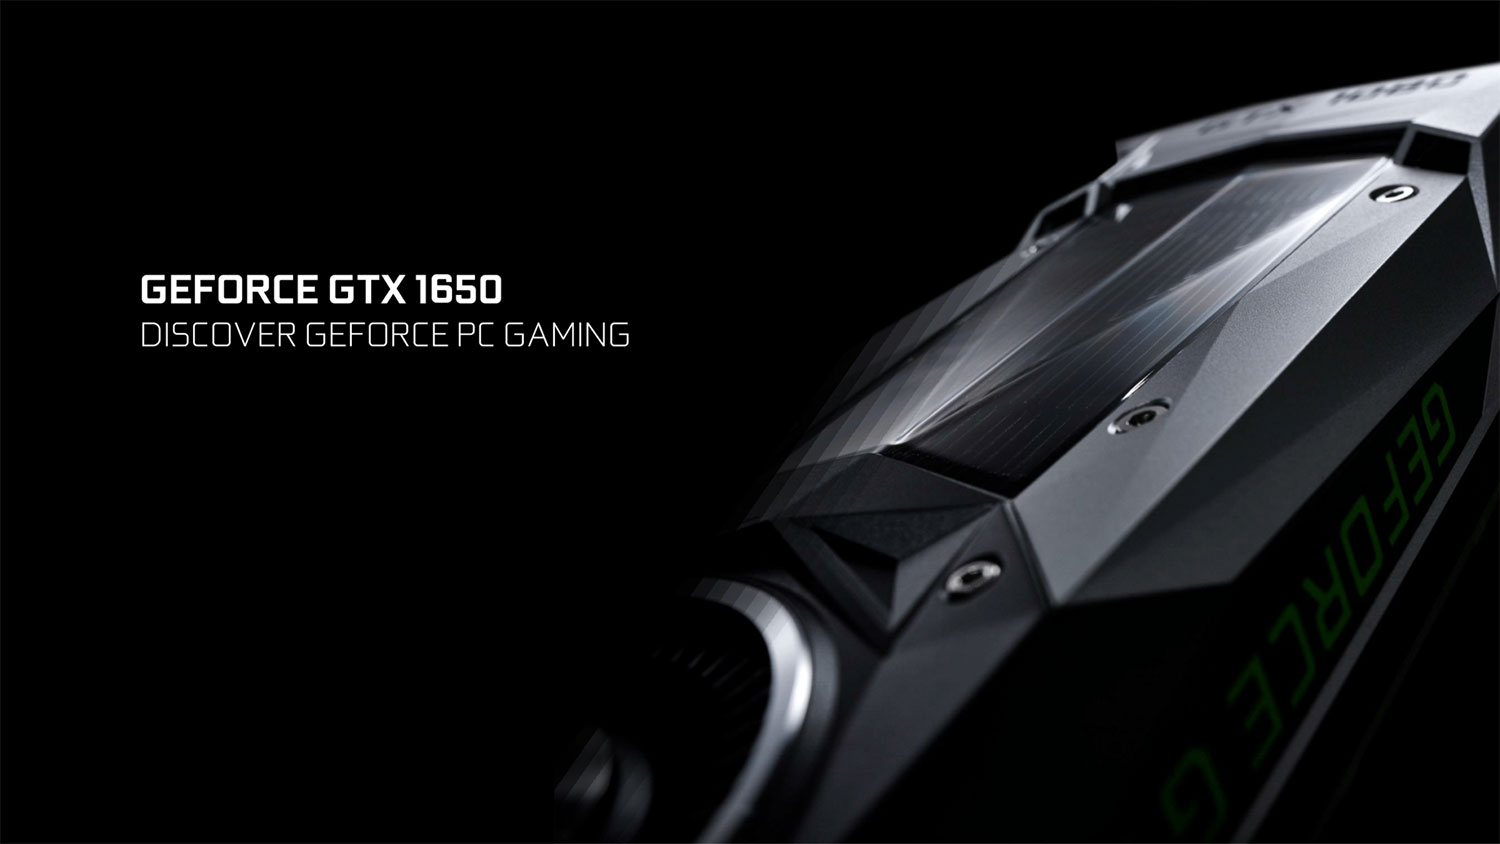 کارت گرافیک GeForce GTX 1650 با قیمت ۱۴۹ دلار رسما معرفی شد